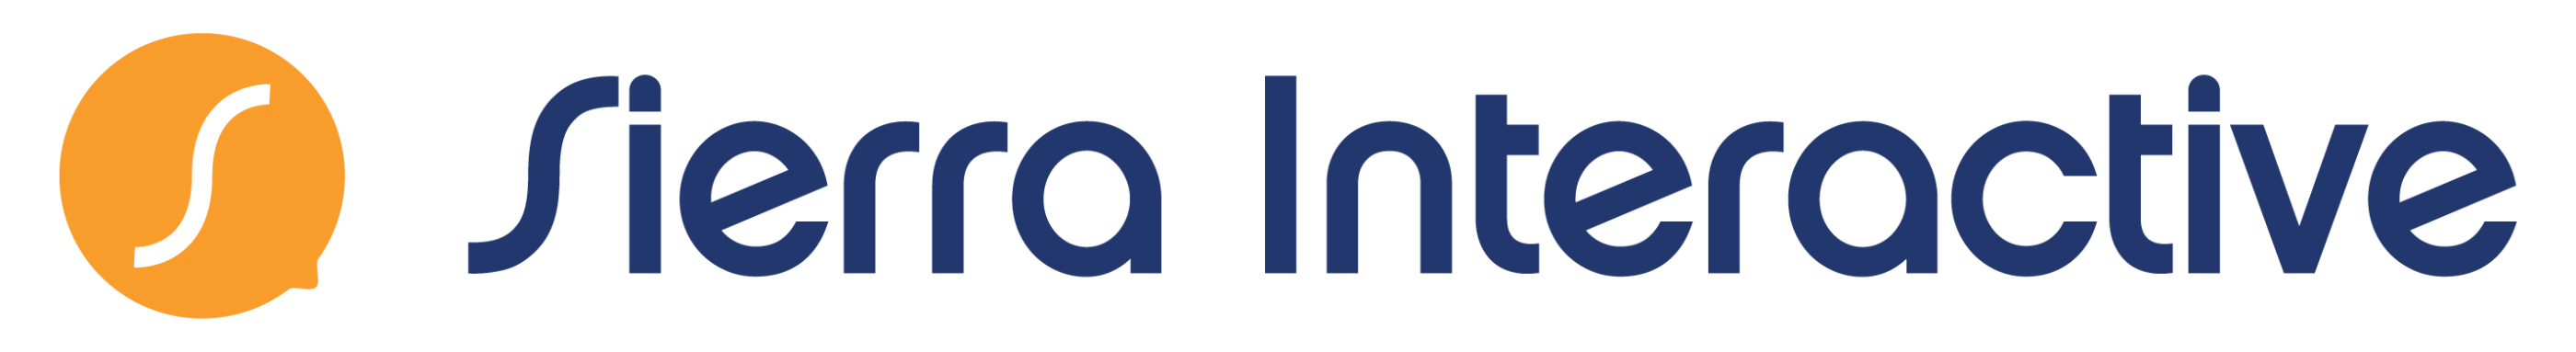 Sierra-Interactive_logo